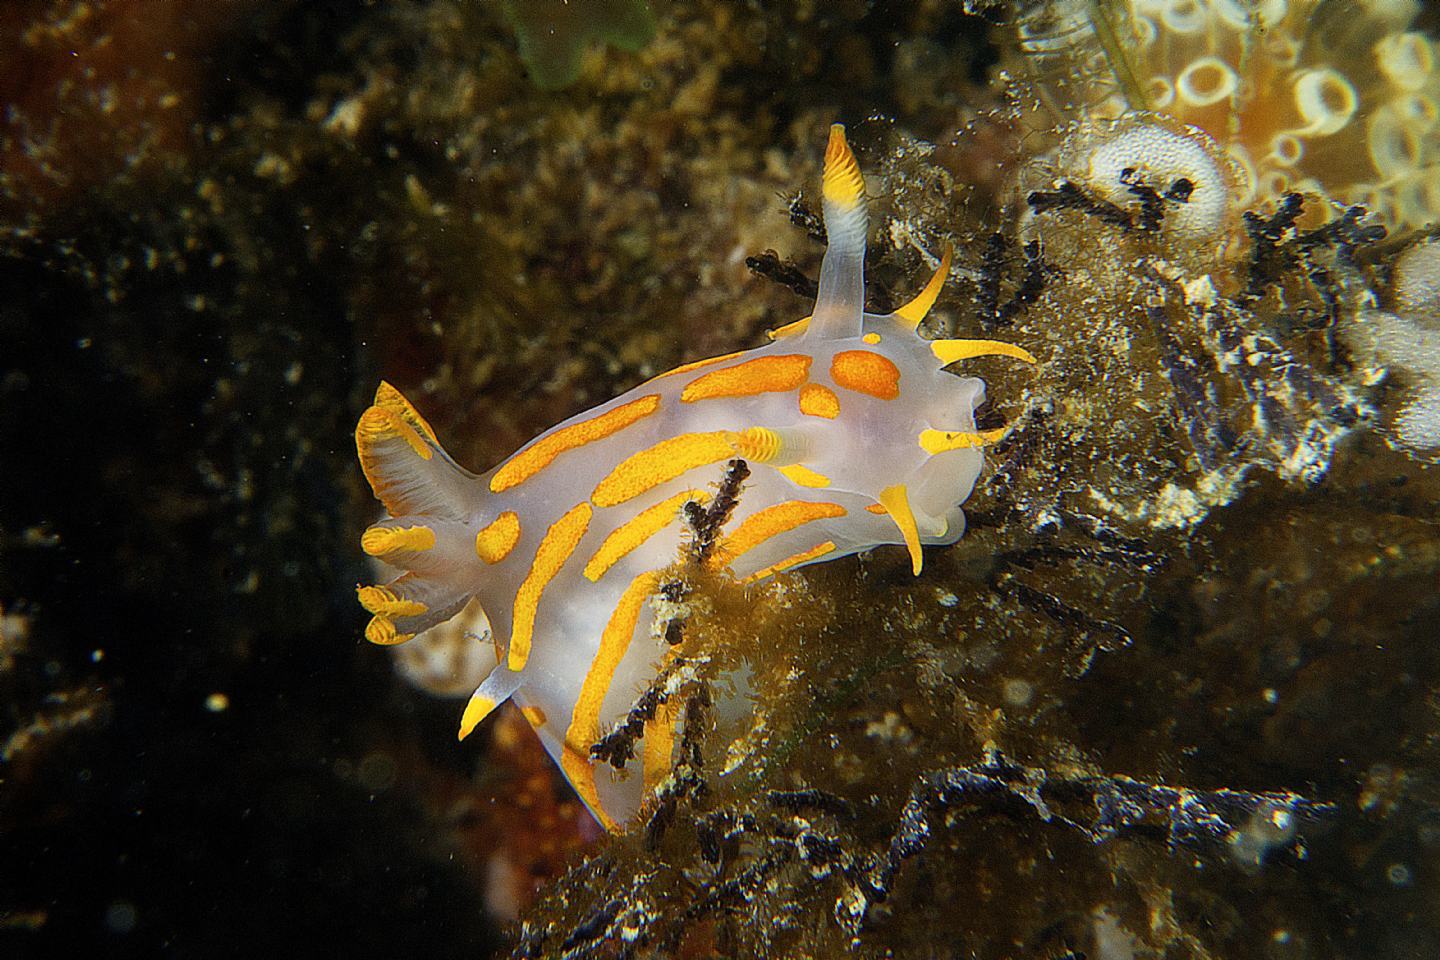 Raccolta di nudibranchi del Mar Piccolo